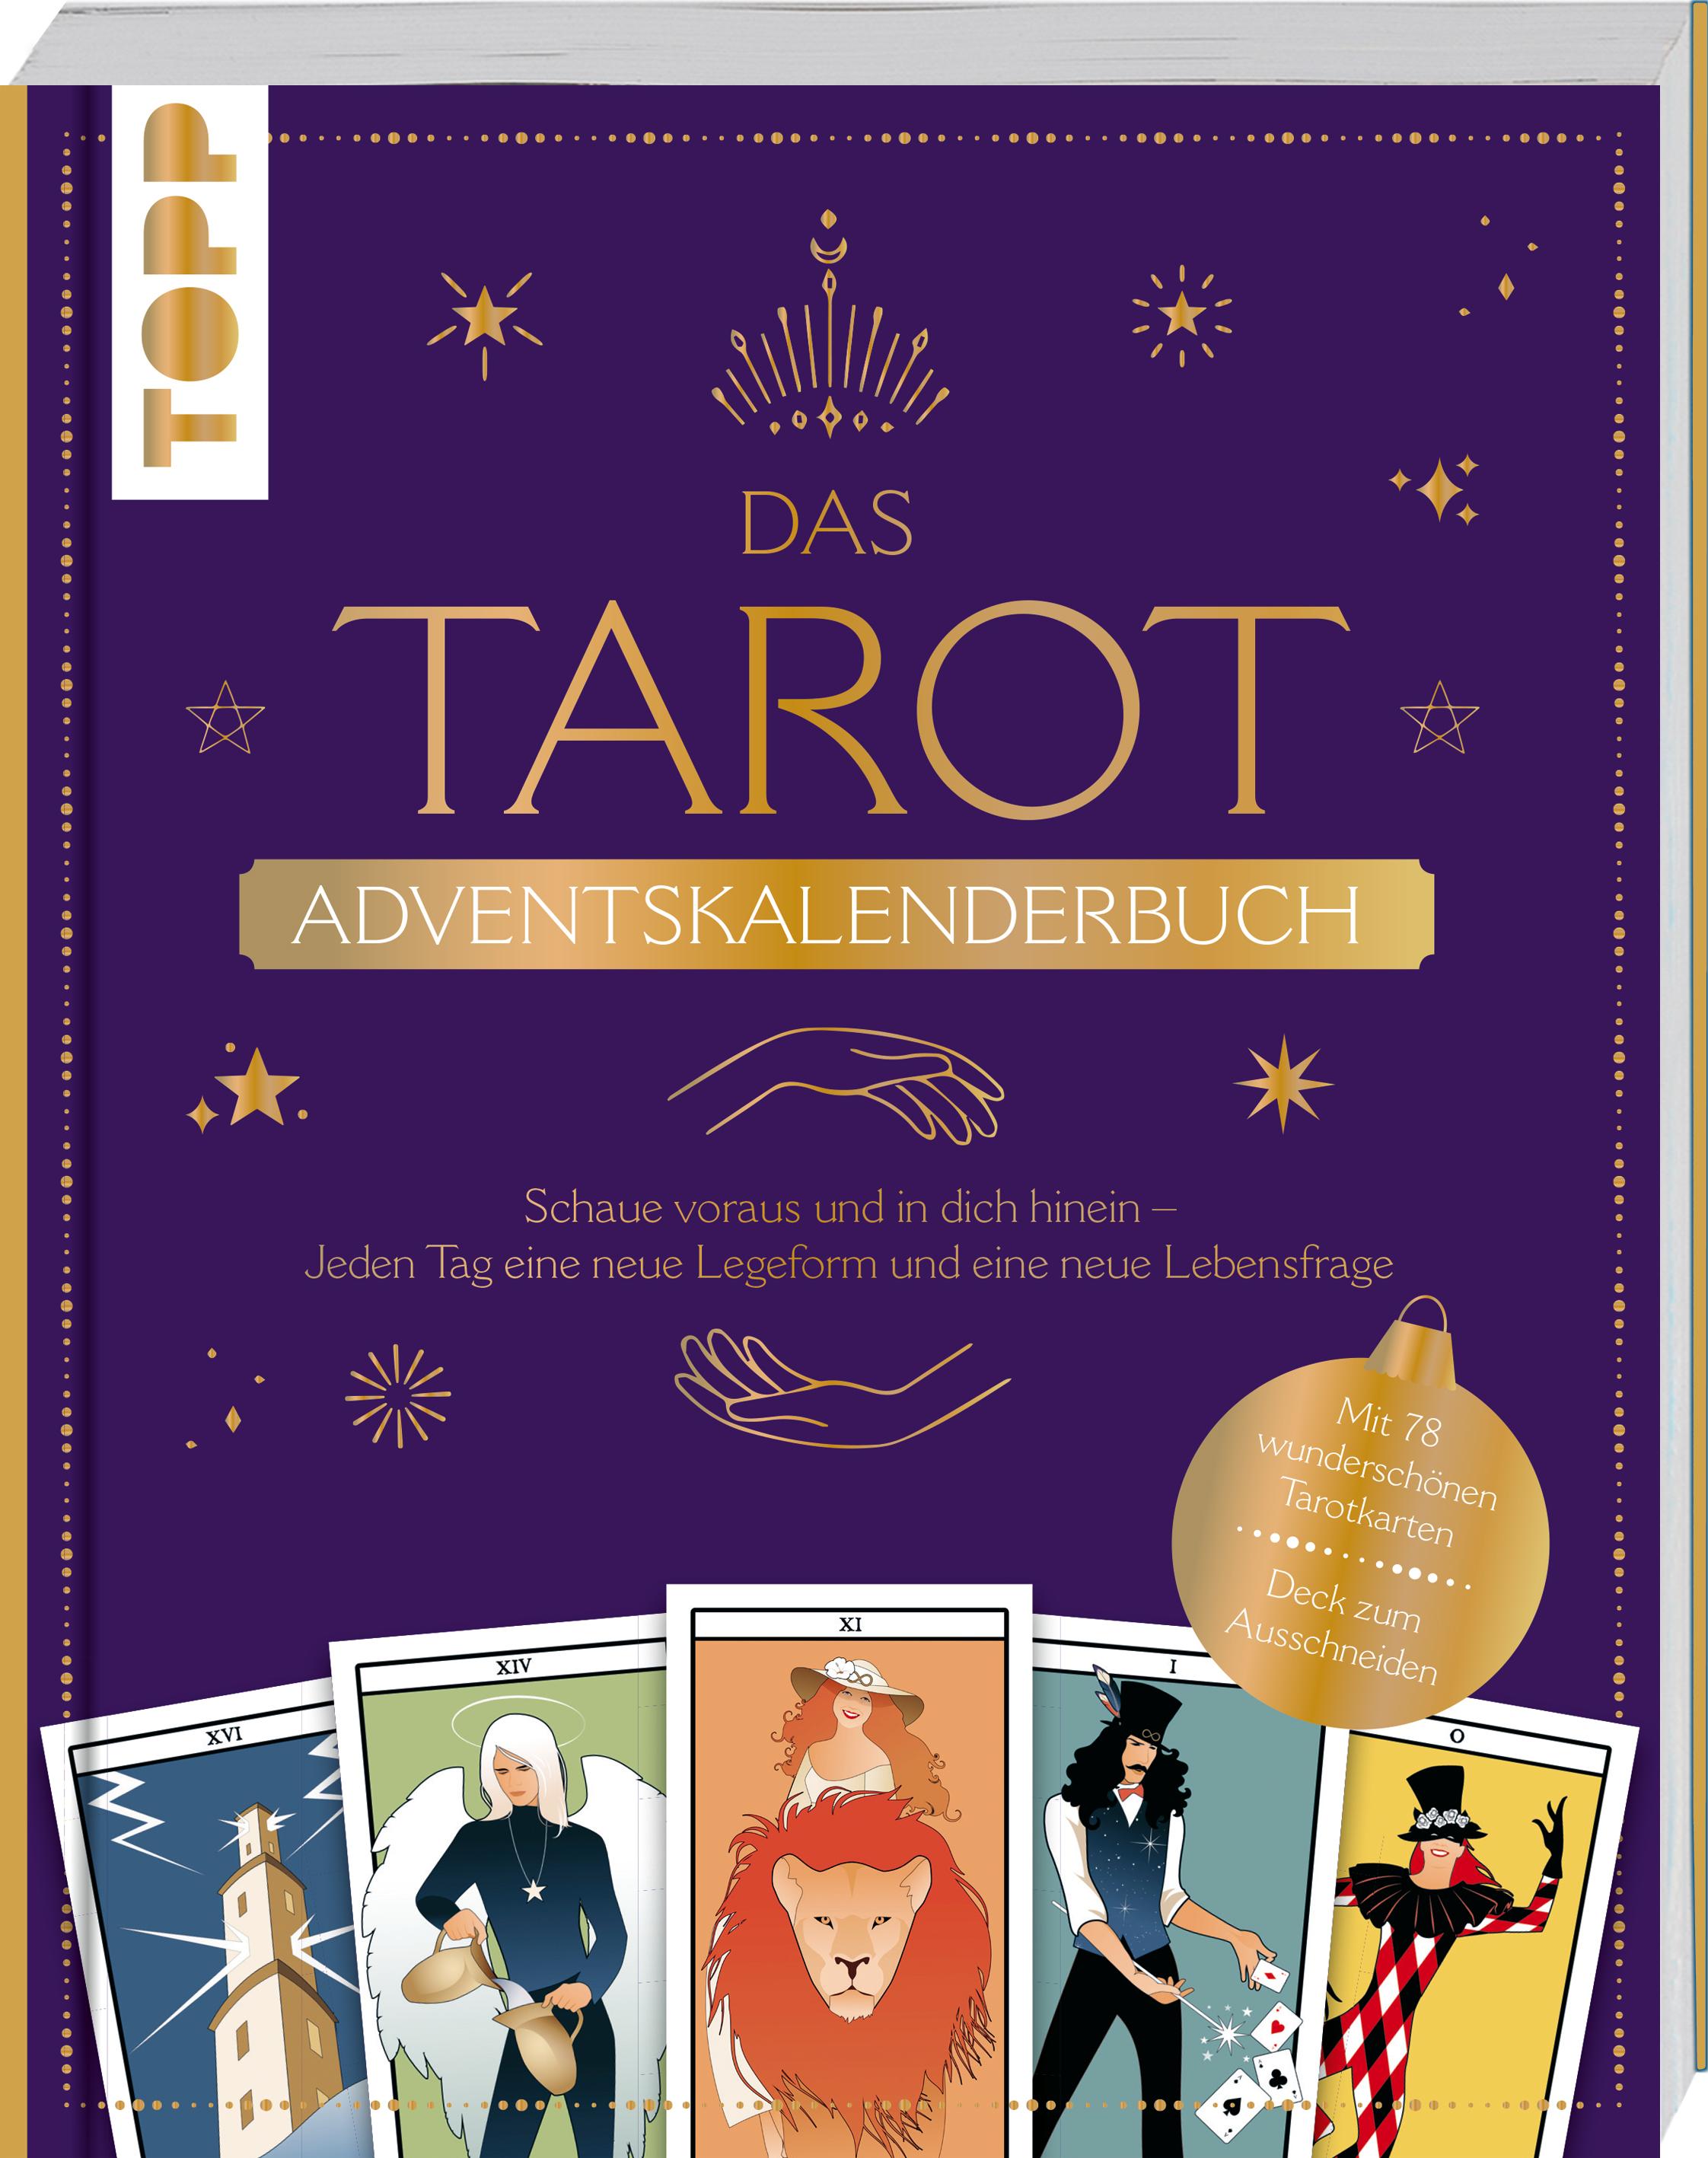 Das Tarot Adventskalenderbuch 24 Tage, 24 Legeformen, 24 Lebensfragen. Buch mit Ausklappseiten für jeden Tag mit wunderschönem 78 Tarotkarten - Deck zum Ausschneiden